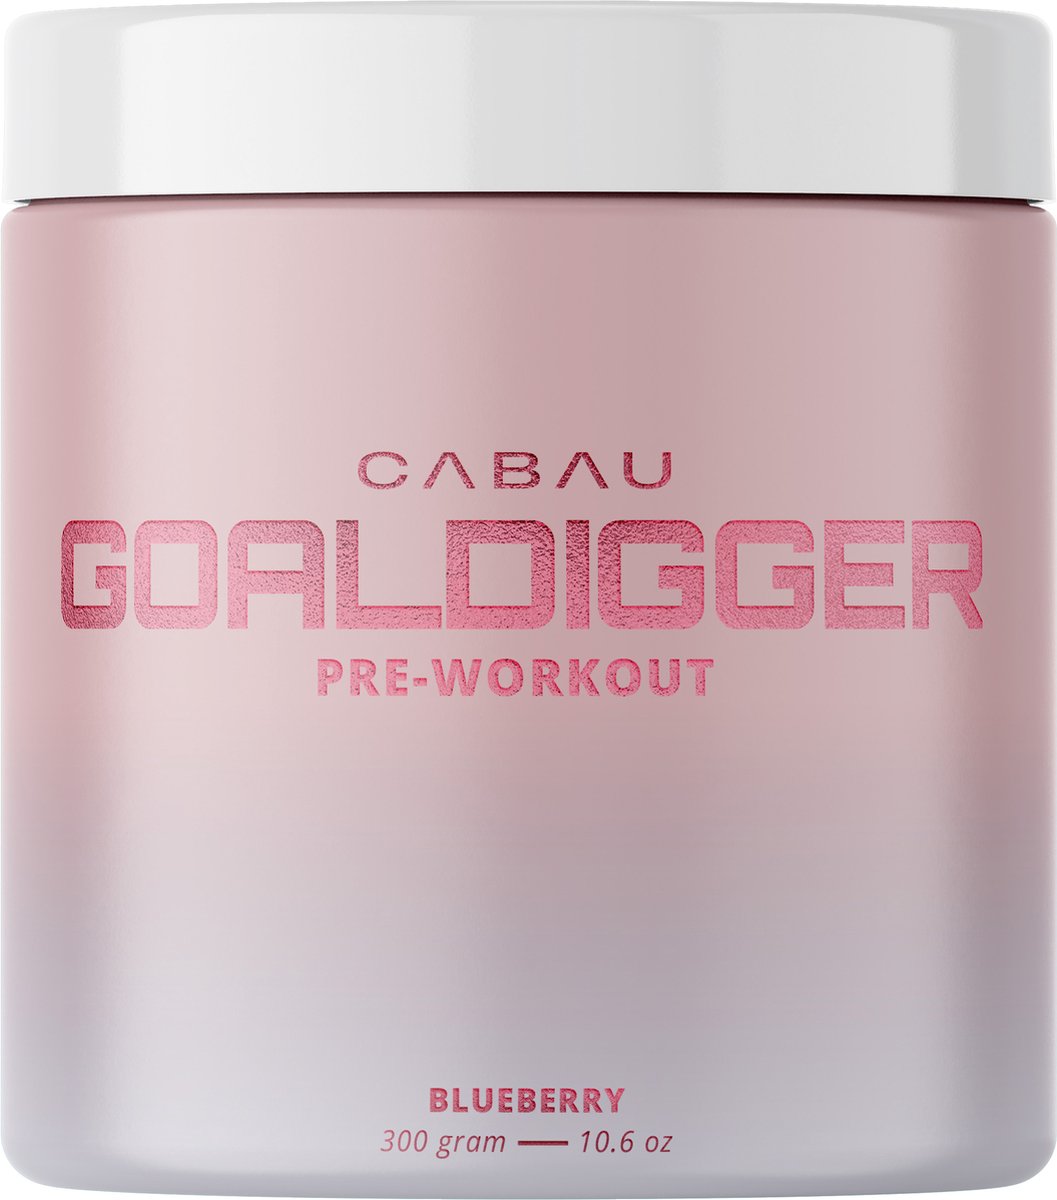 Cabau Lifestyle - Pre-workout - Blauwe bessen - 300 gram - 30 boosts - Voor meer uithoudingsvermogen en energie - Pre workout voor vrouwen